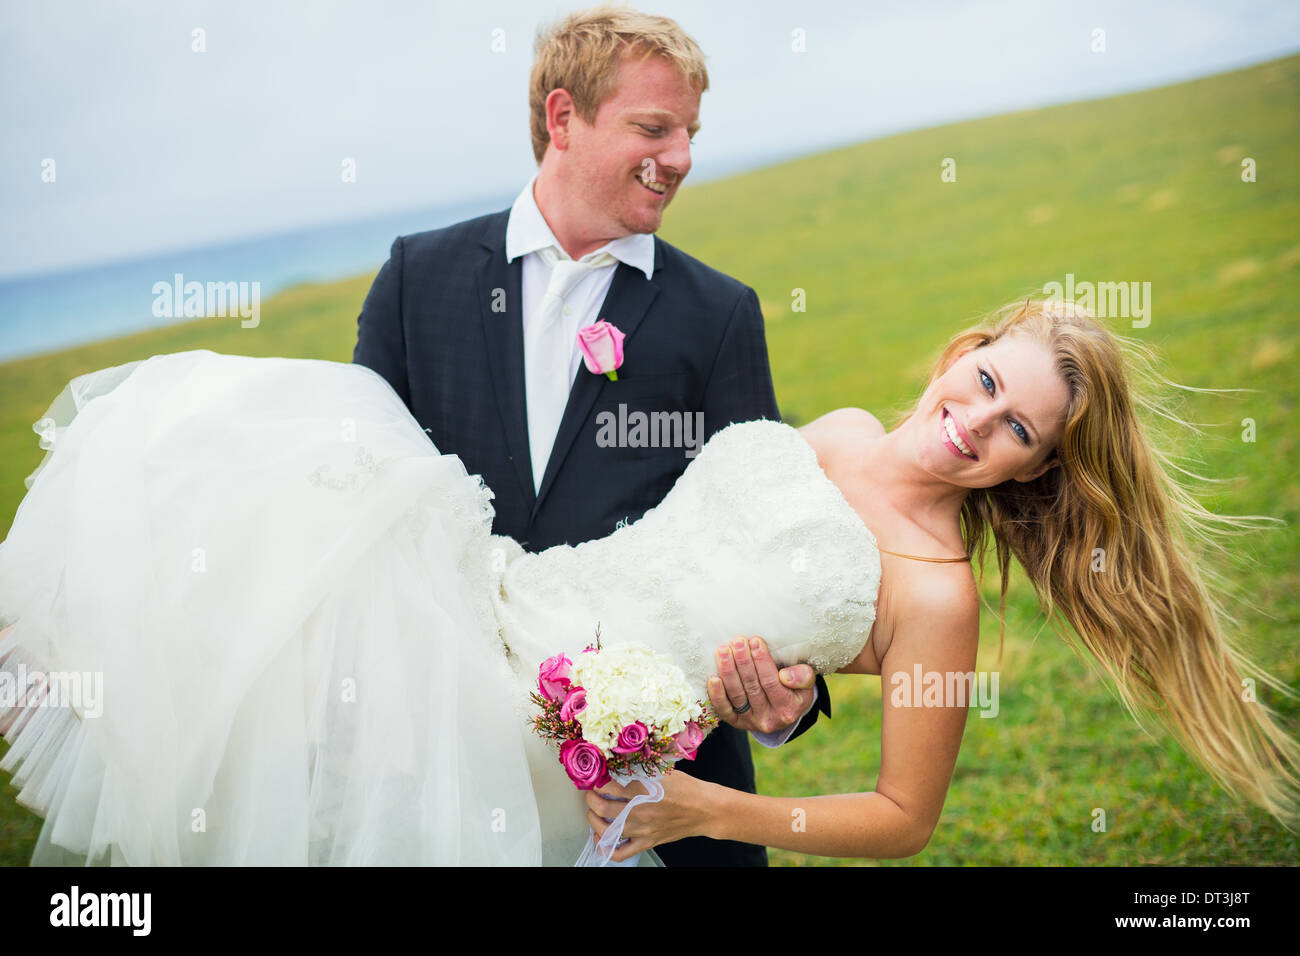 Hochzeitspaar, glückliche Braut und Bräutigam, geringe Schärfentiefe Fokus Braut Stockfoto